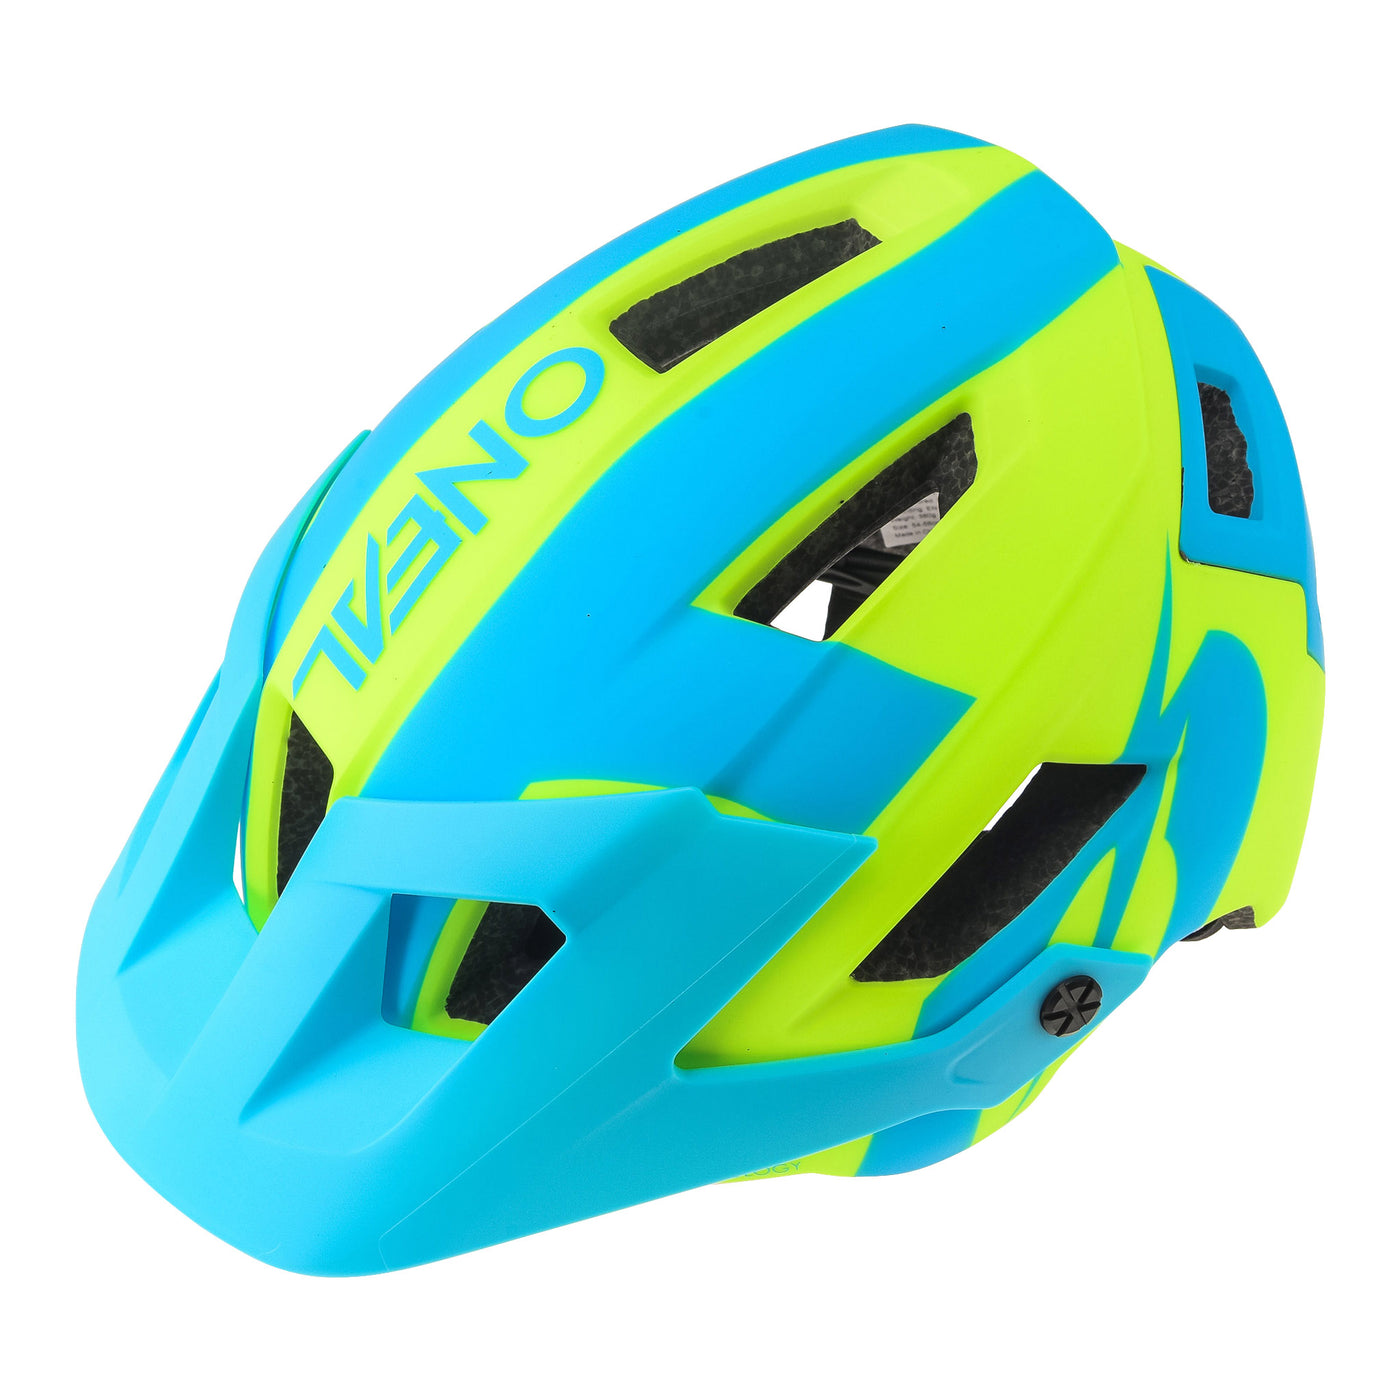 ONEAL DEFENDER 2.0 Helmet SLIVER Neon Yellow/Blue